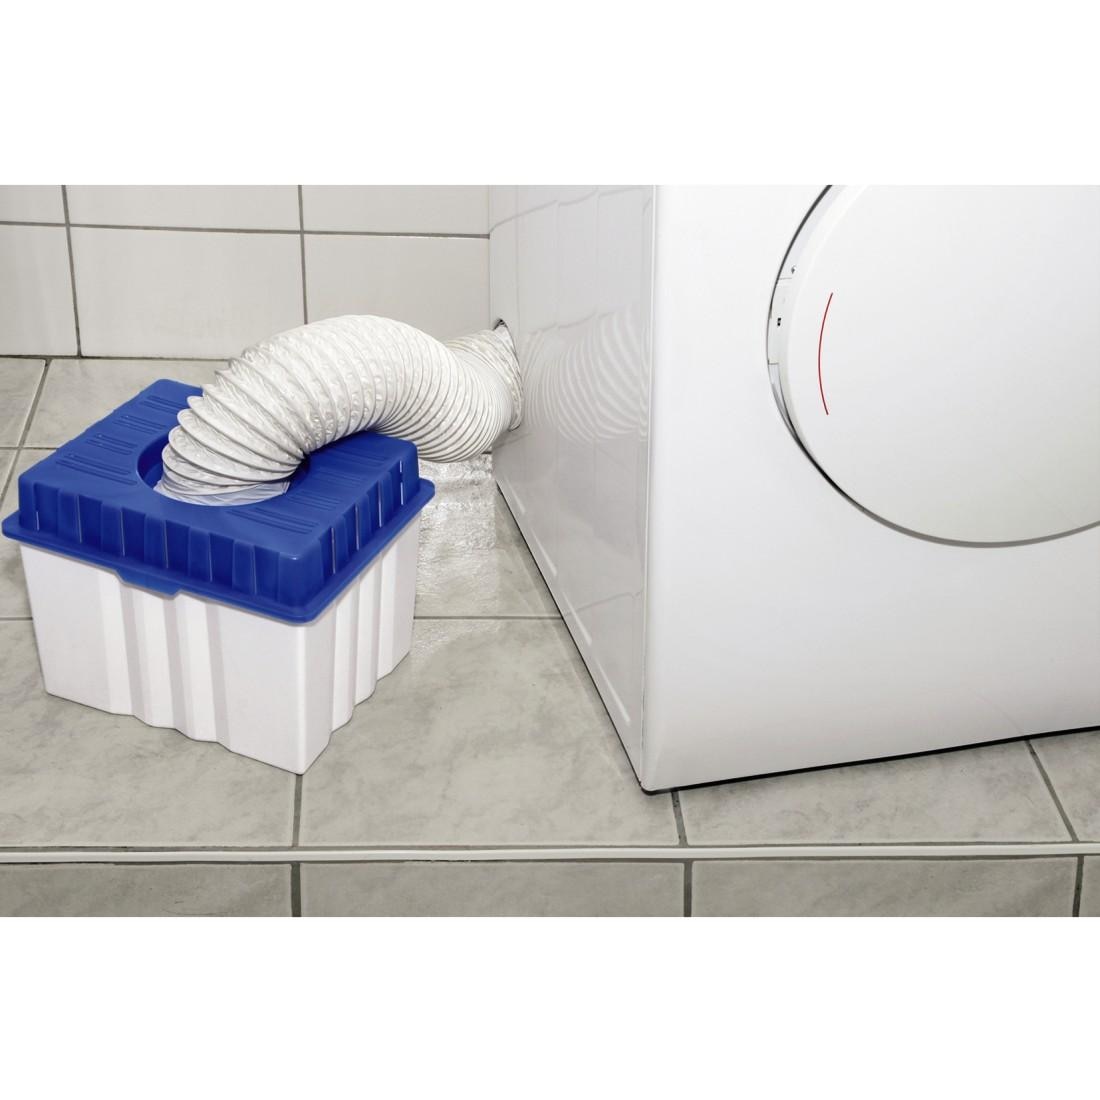 Hama Wäschetrockner-Kondensator »Kondensbox, Kondenswasserbehälter für Ablufttrockner«, 28,5 x 23,5 x 23 cm, 7 l